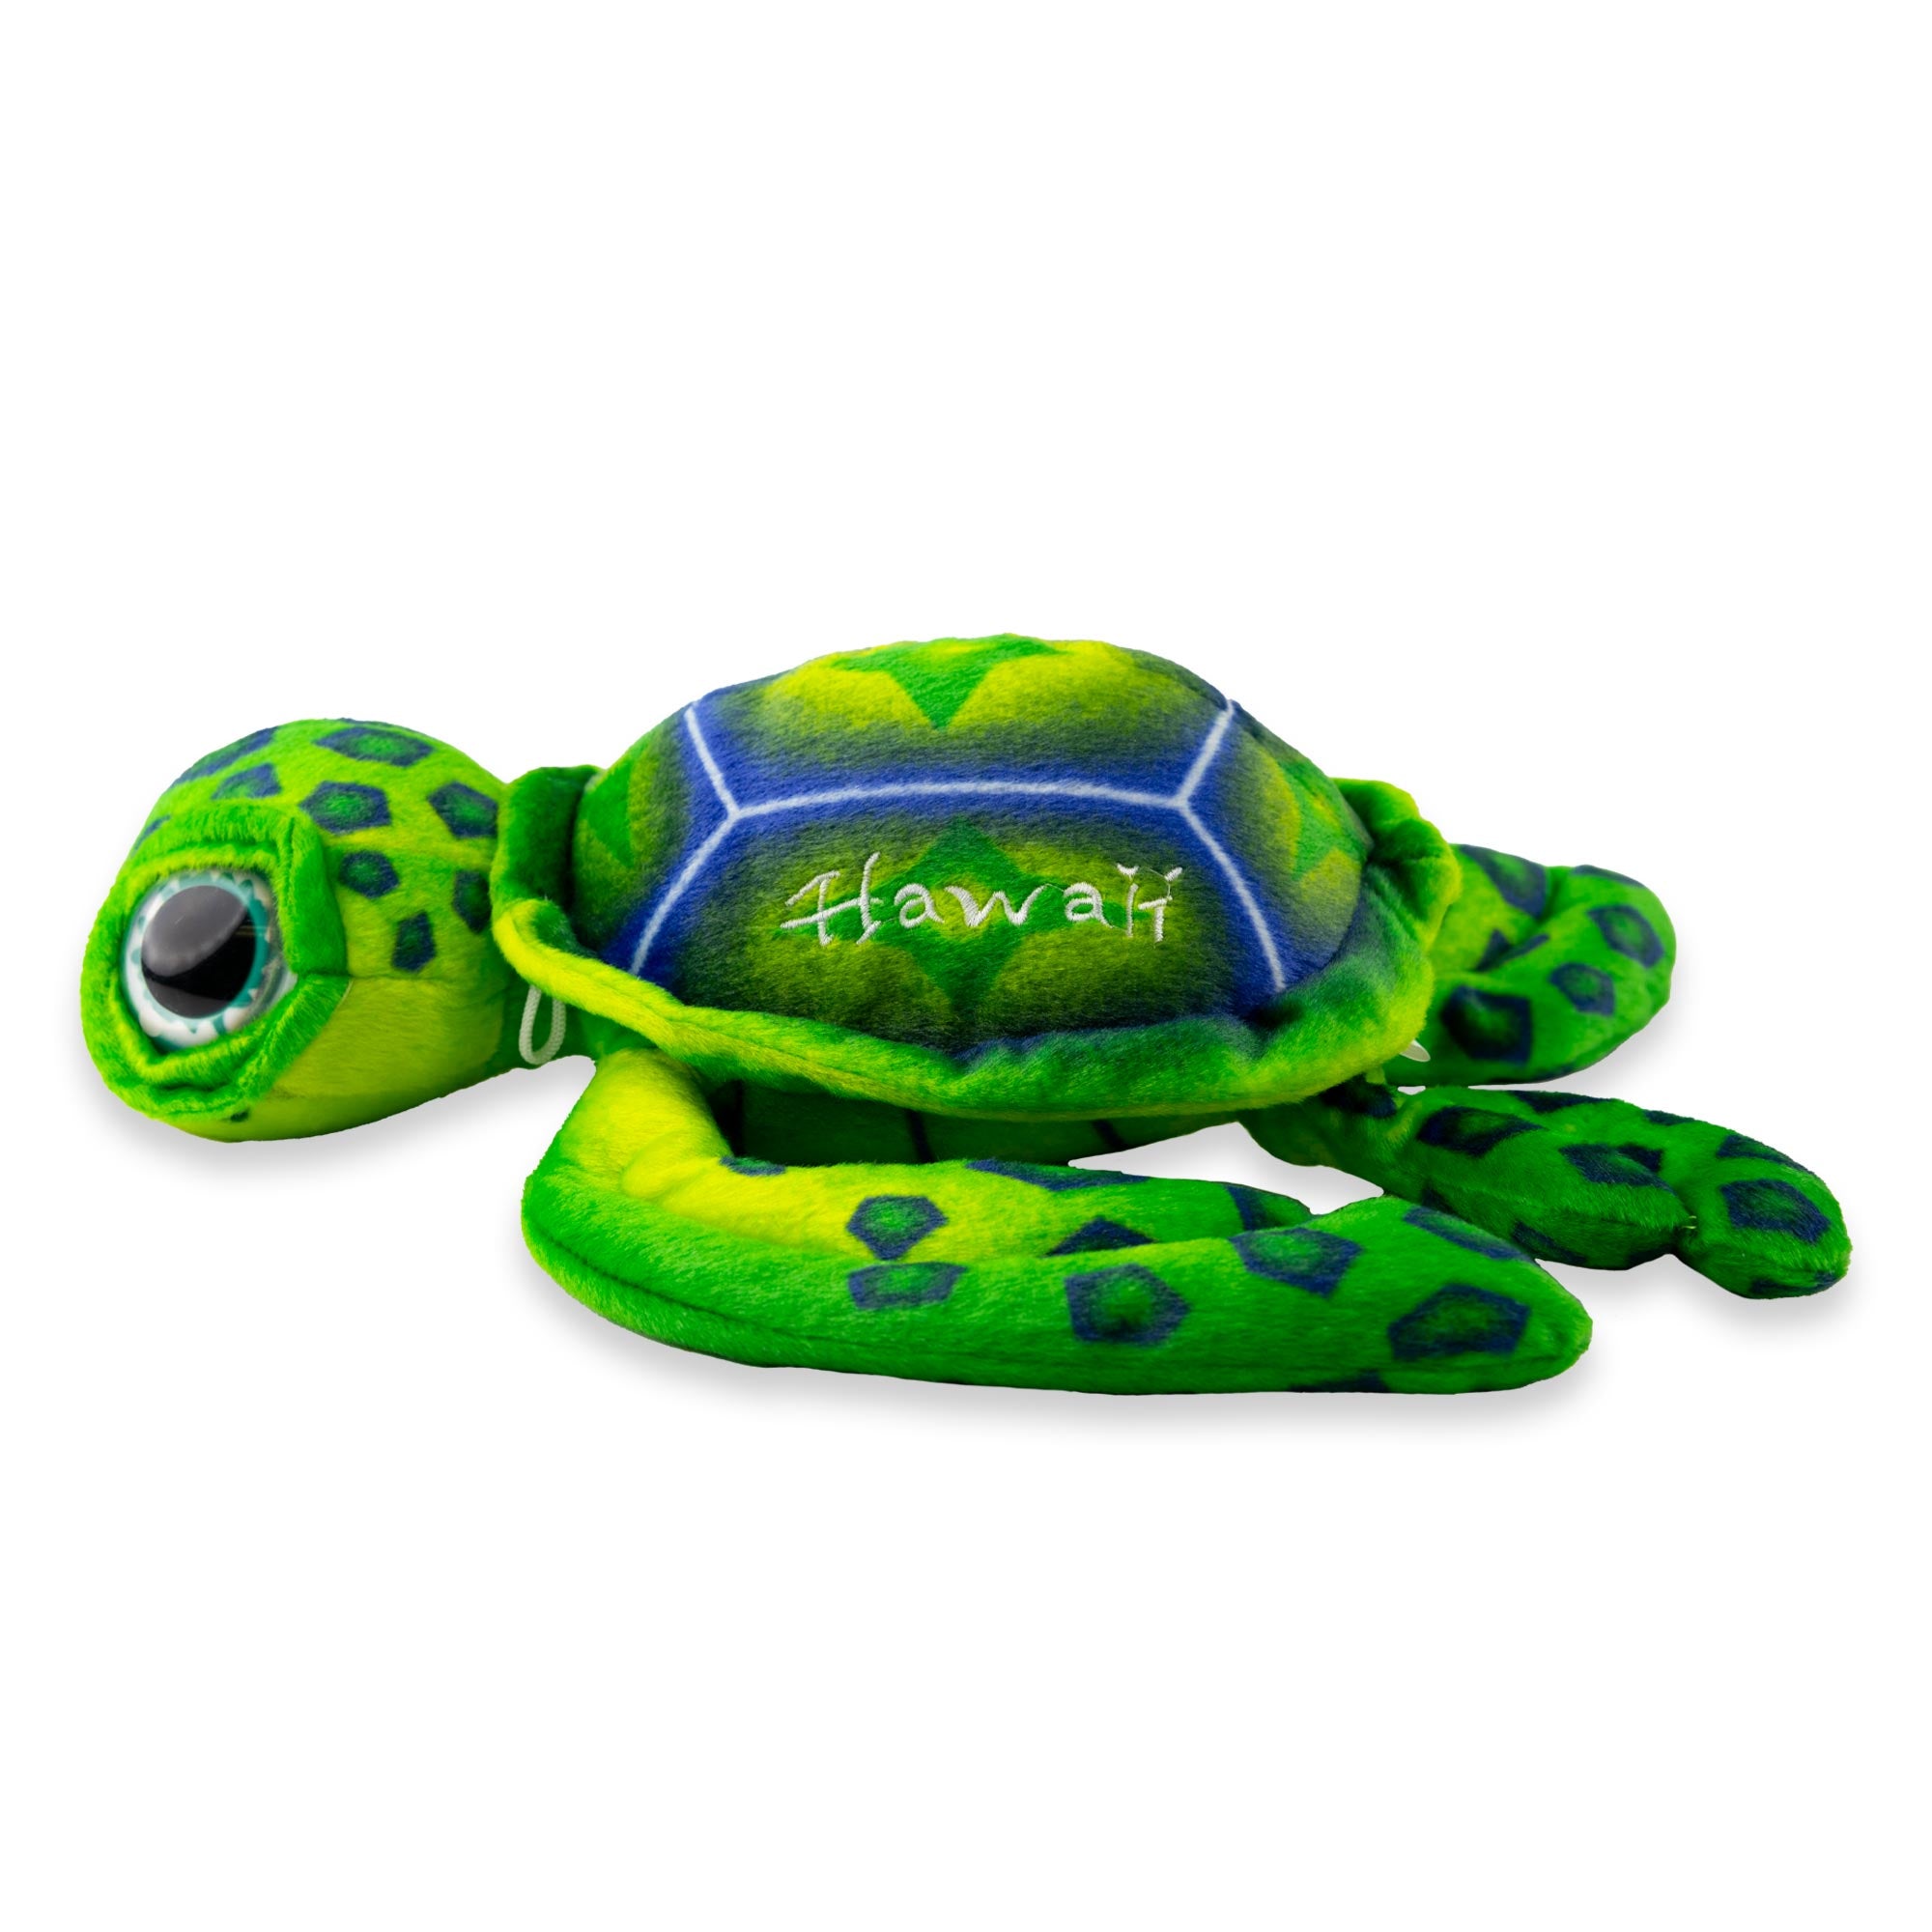 Honu Sea Turtle Plush Toy- Green